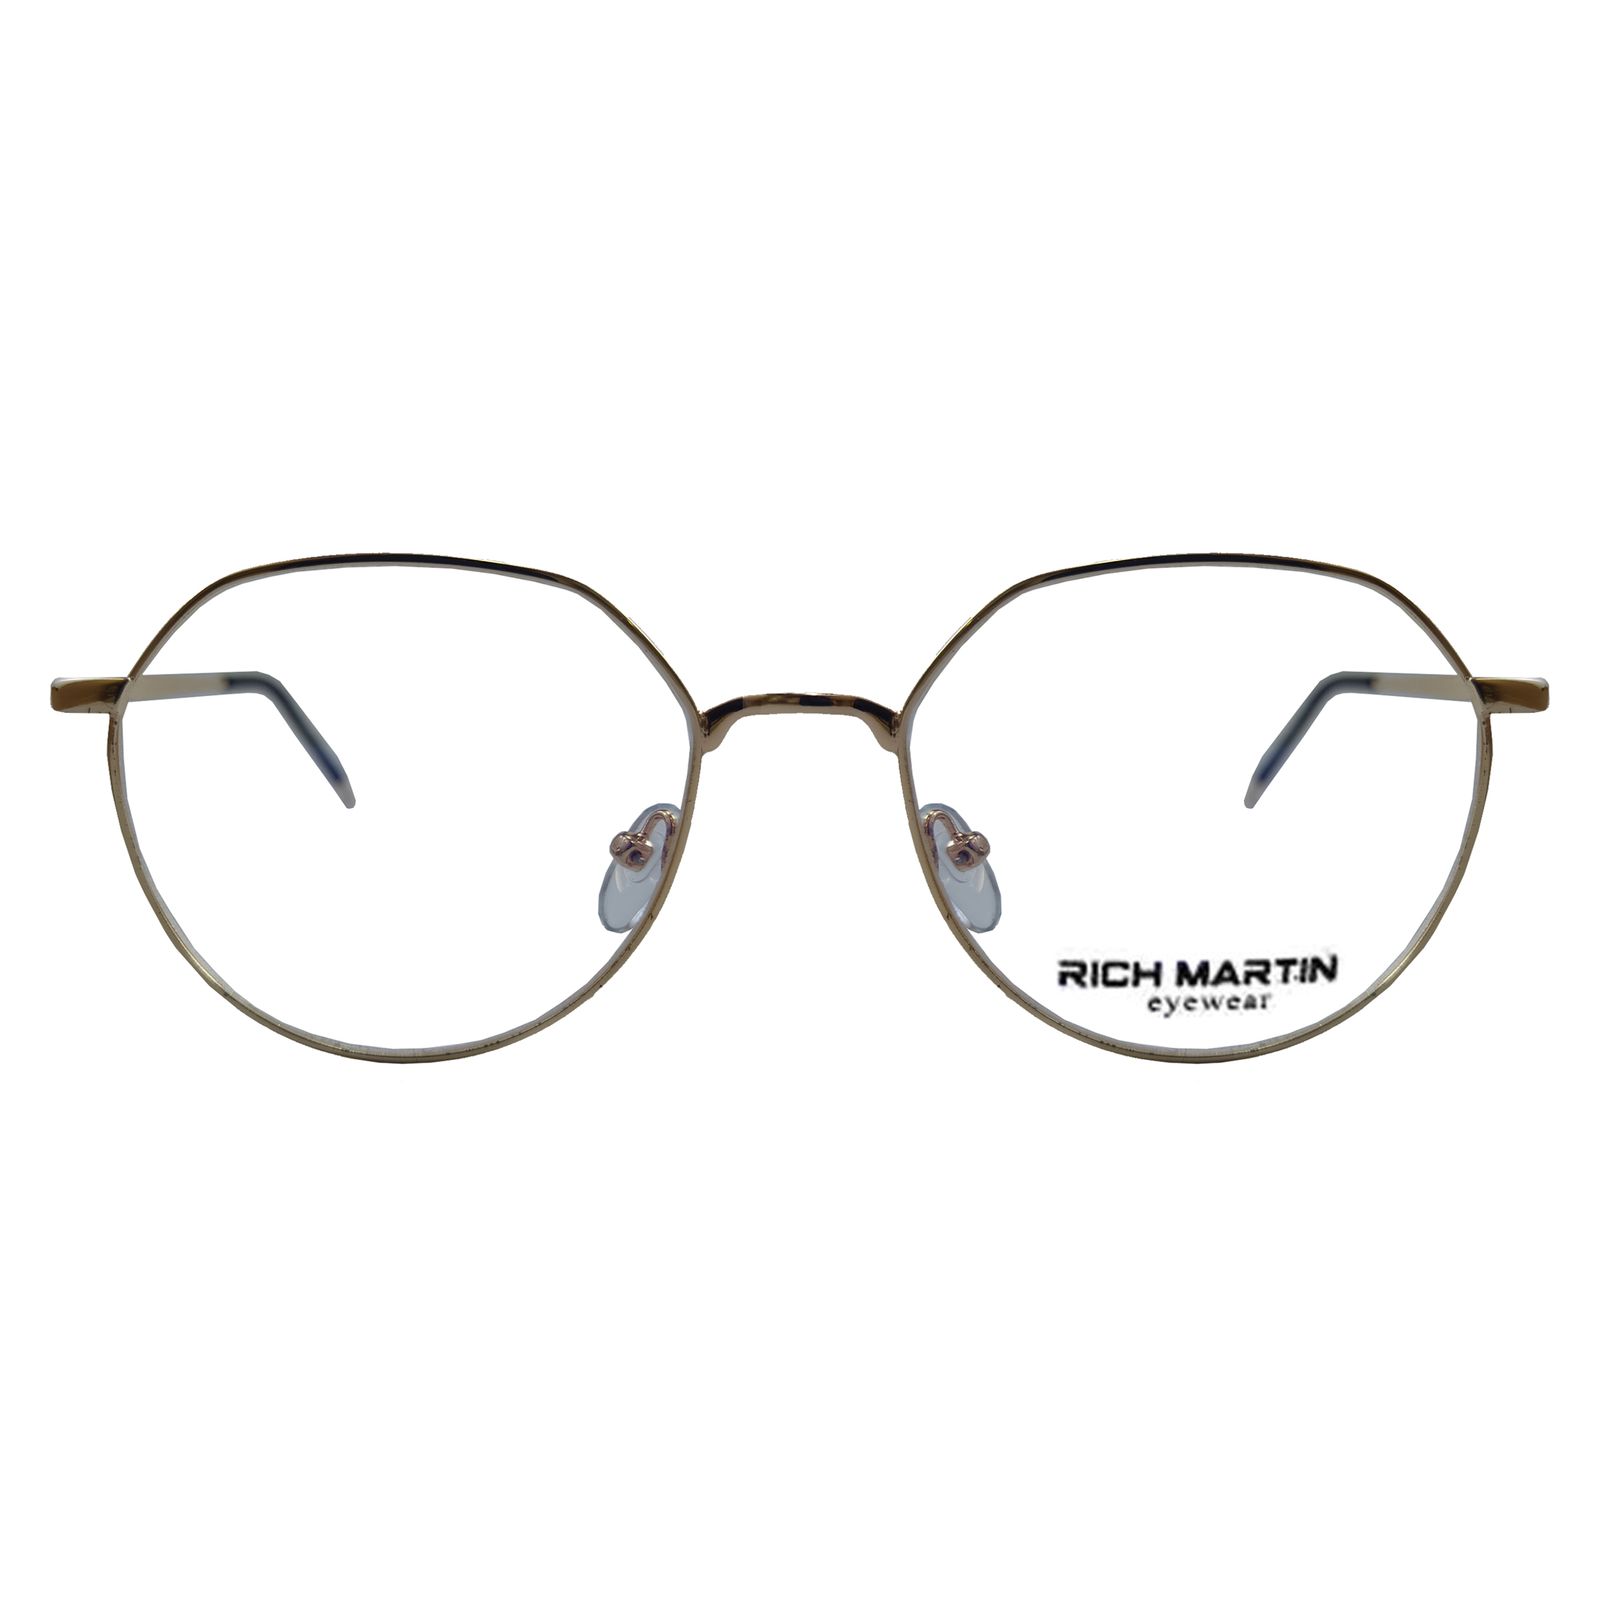 فریم عینک طبی ریچ مارتین مدل 9901 کد 113 -  - 1